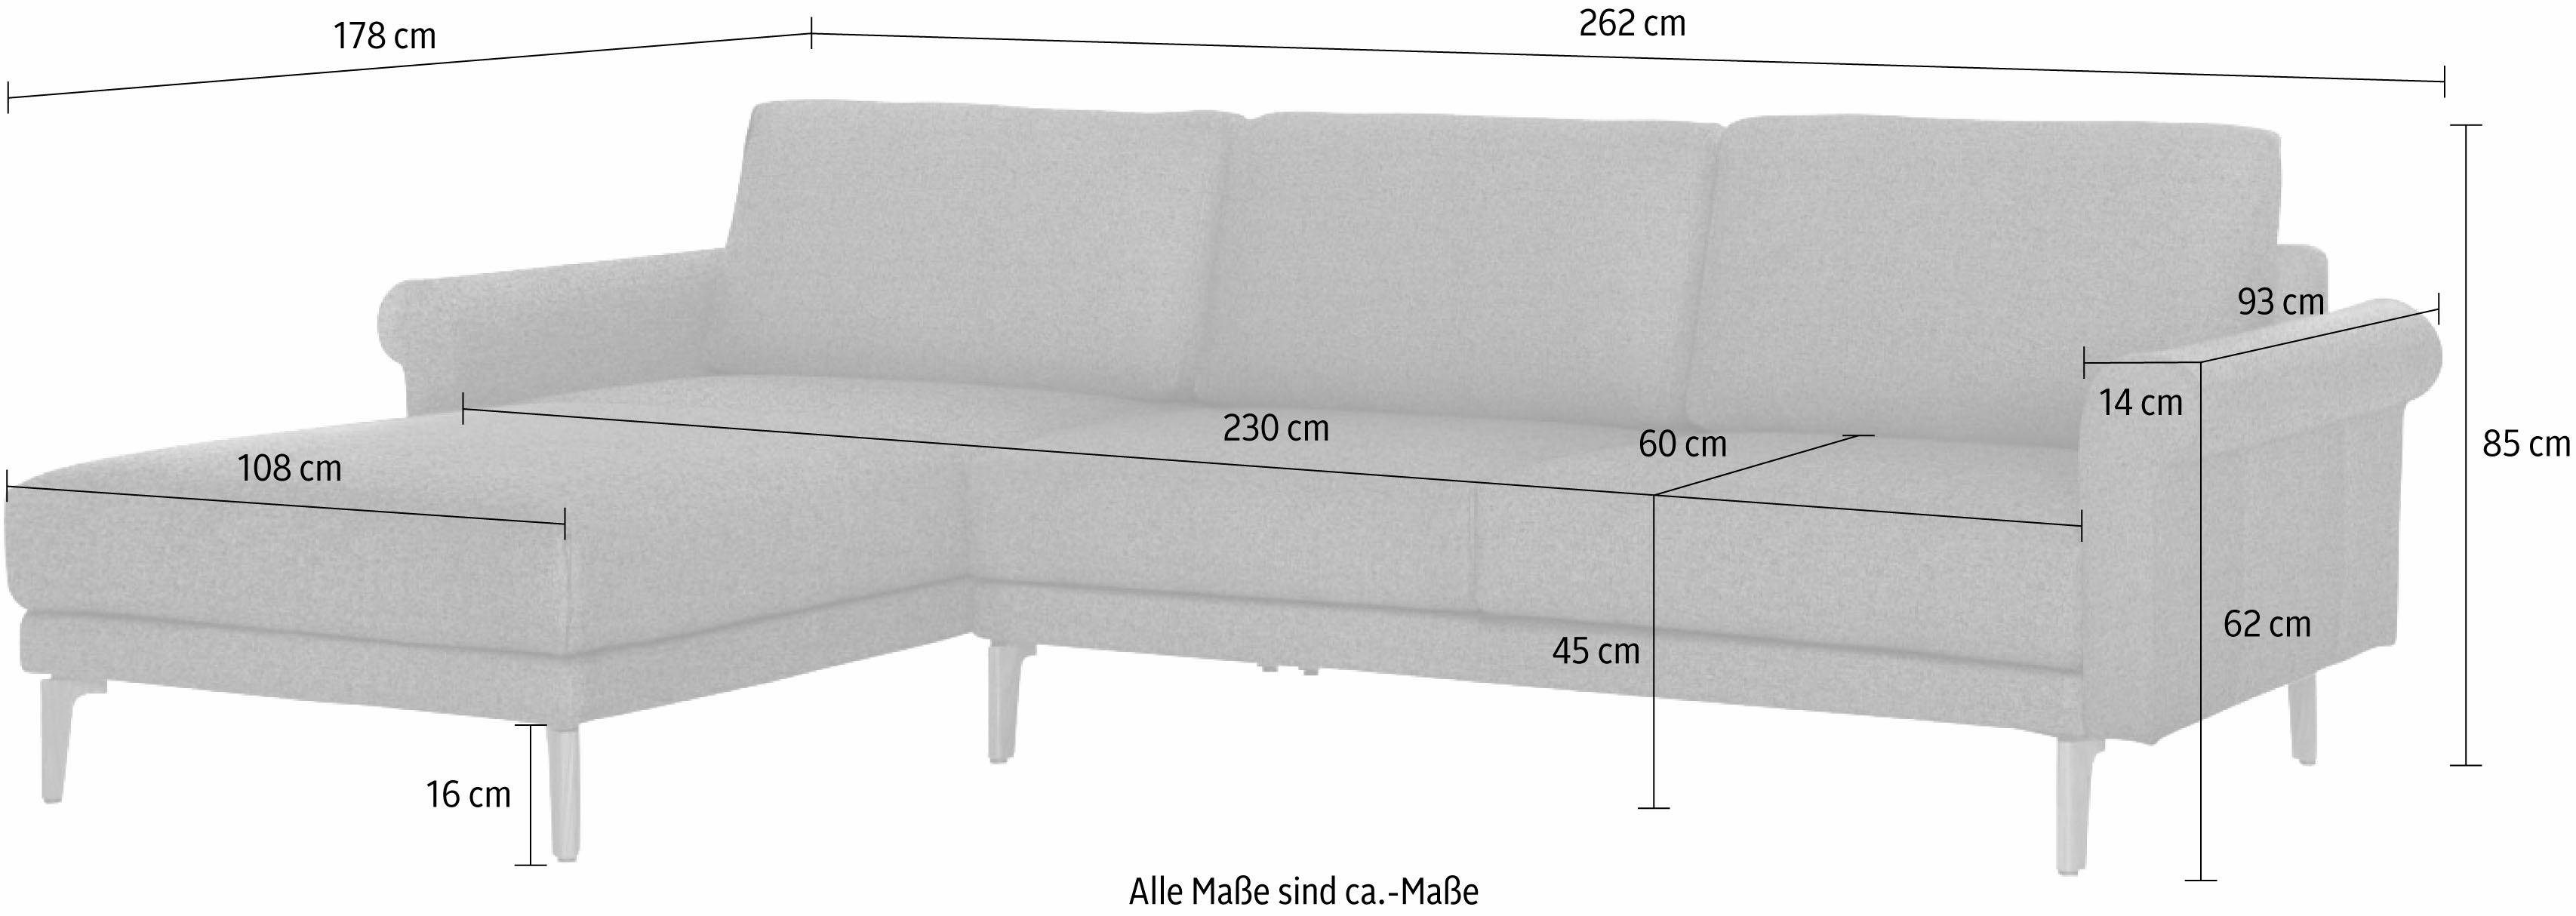 Nussbaum modern Landhaus, sofa Ecksofa hülsta Armlehne Fuß 262 cm, hs.450, Schnecke Breite